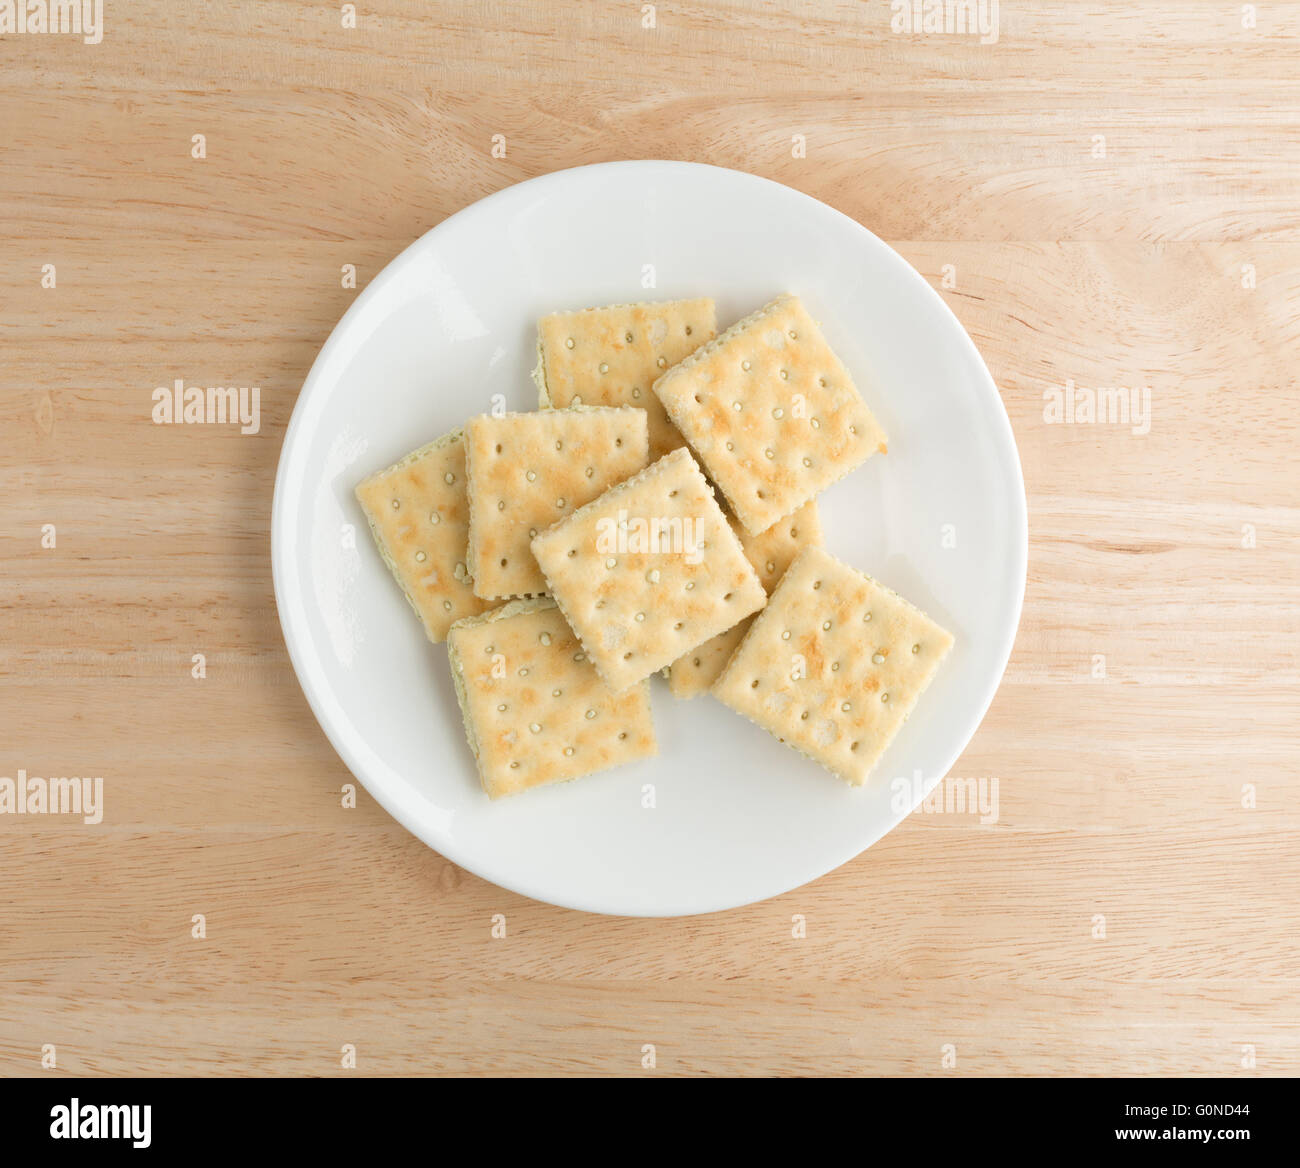 Draufsicht der Frischkäse und Schnittlauch Cracker auf einem weißen Teller oben auf einer hölzernen Tischplatte. Stockfoto